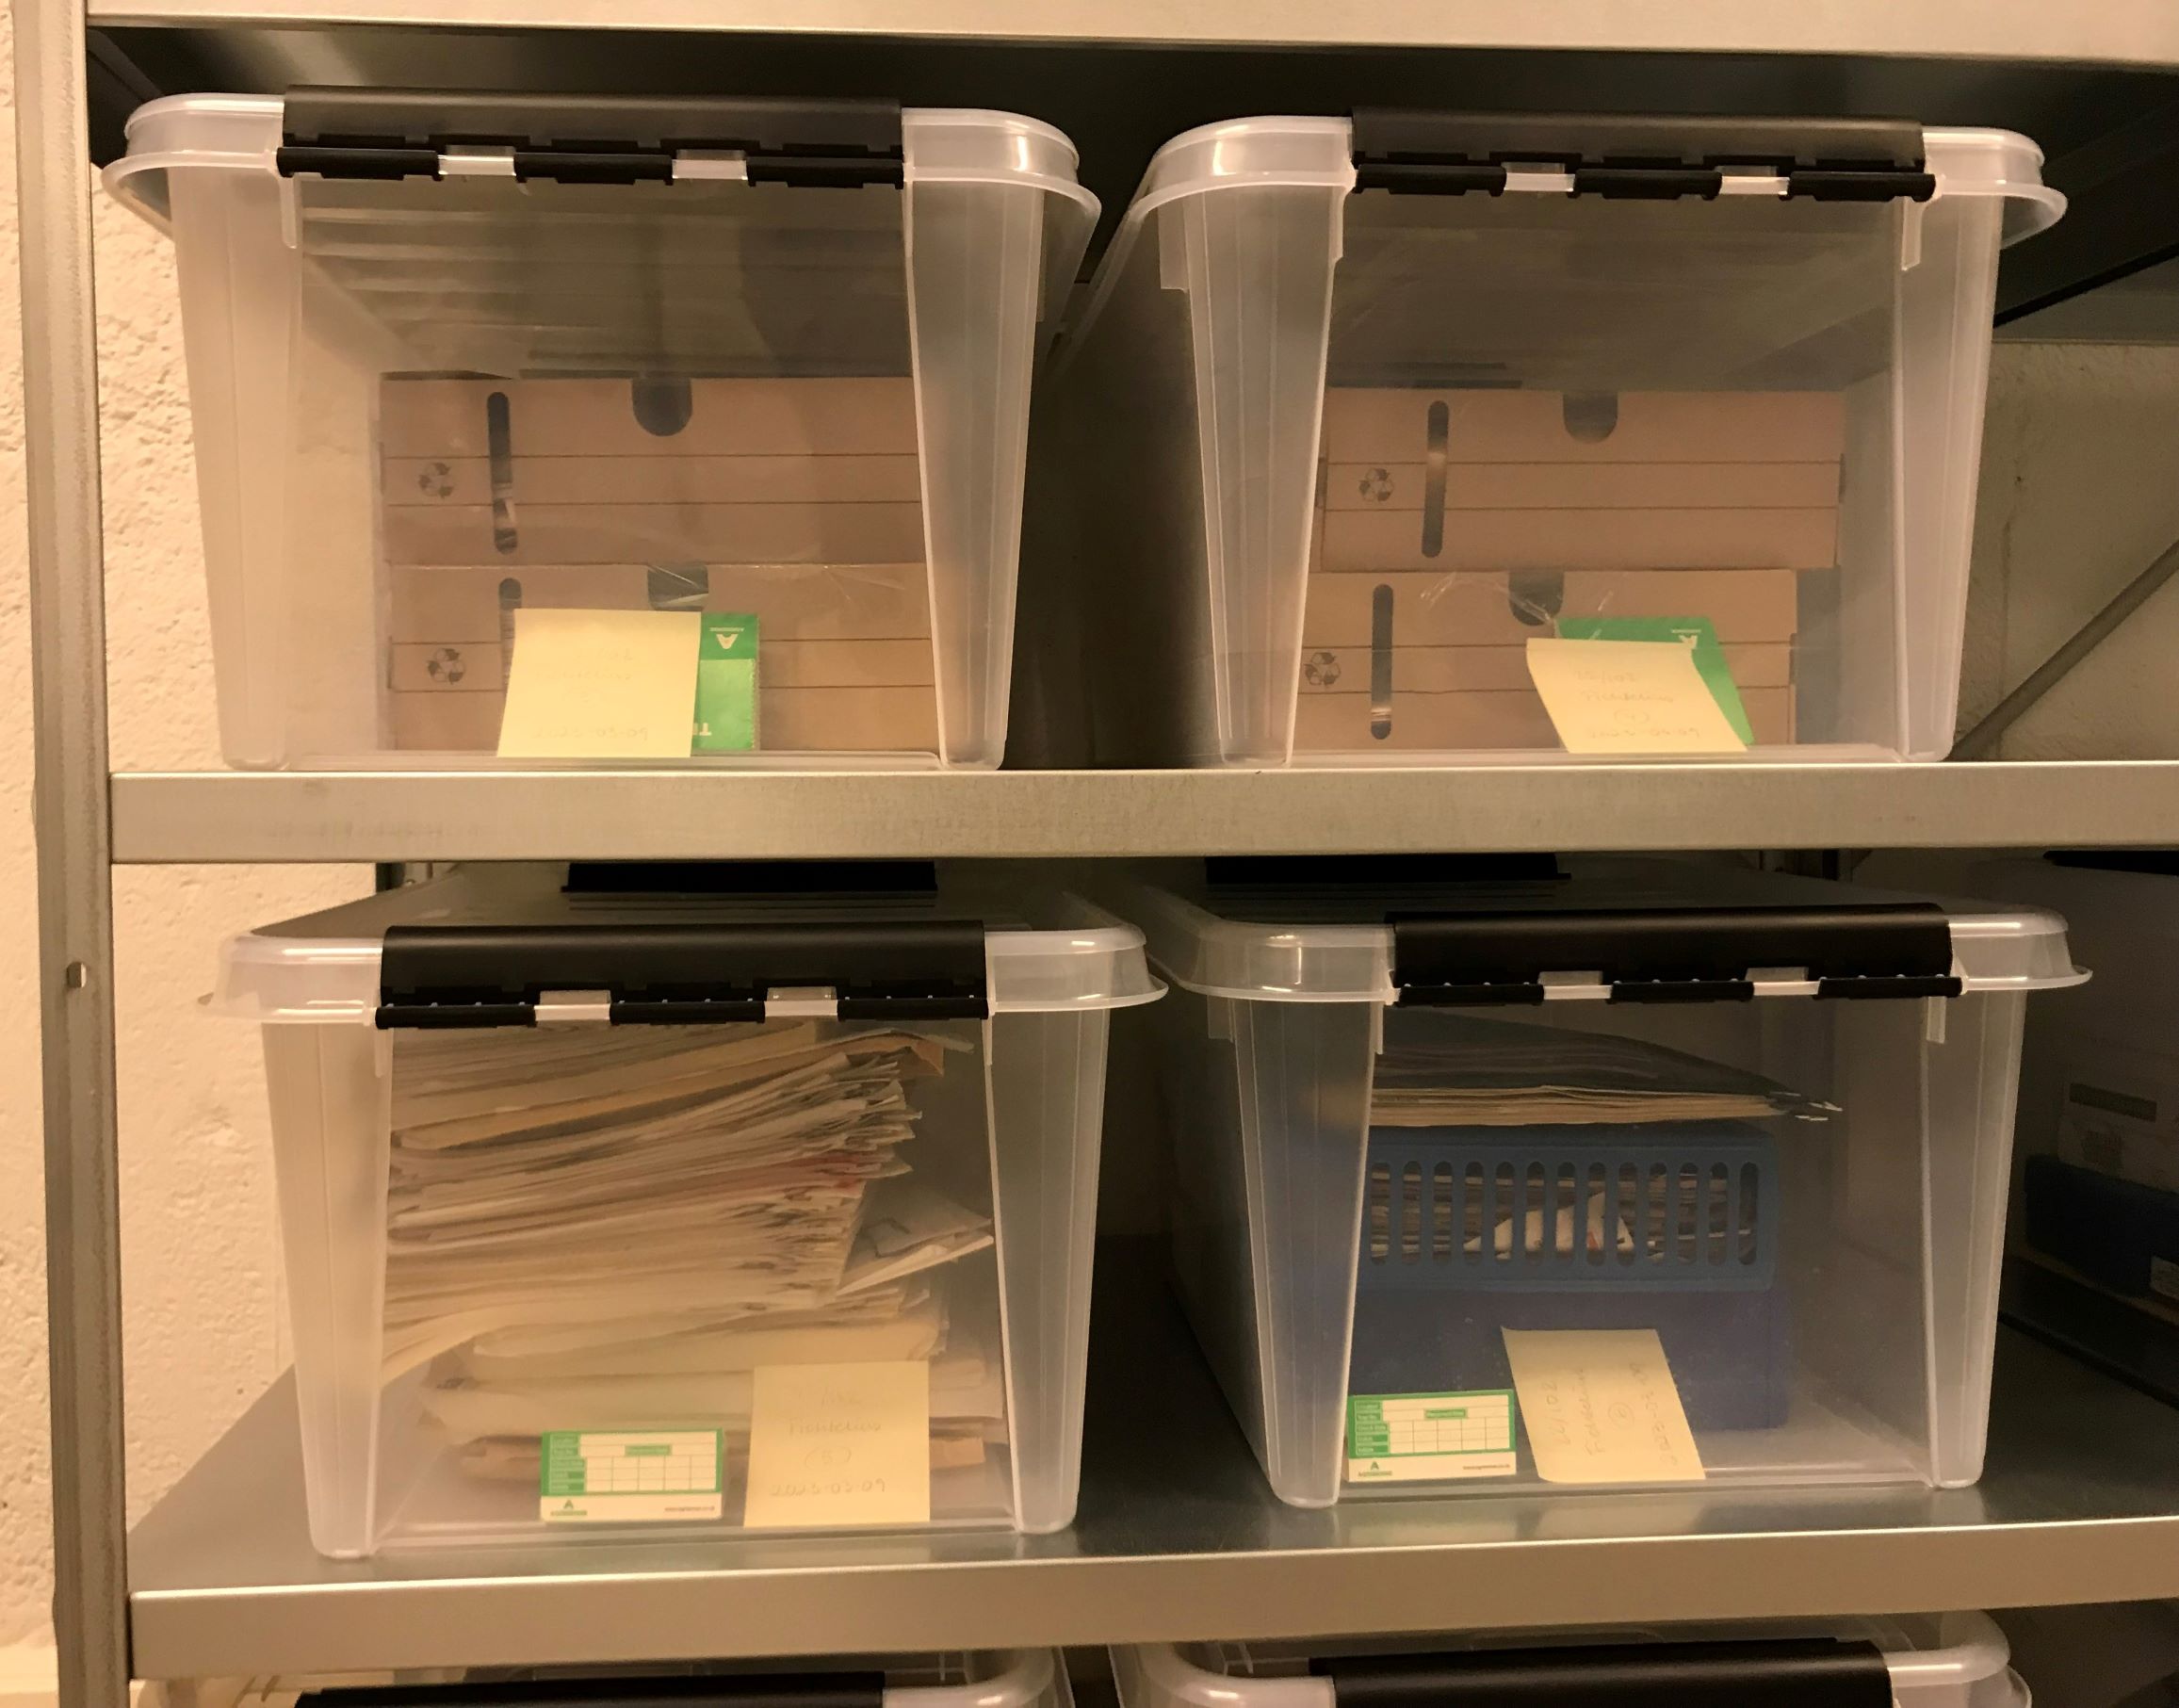 Två hyllplan med fyra genomskinliga plastbackar som innehåller kartonger och dokument. I varje plastback ligger en grön trekantig insektsfälla i papp.